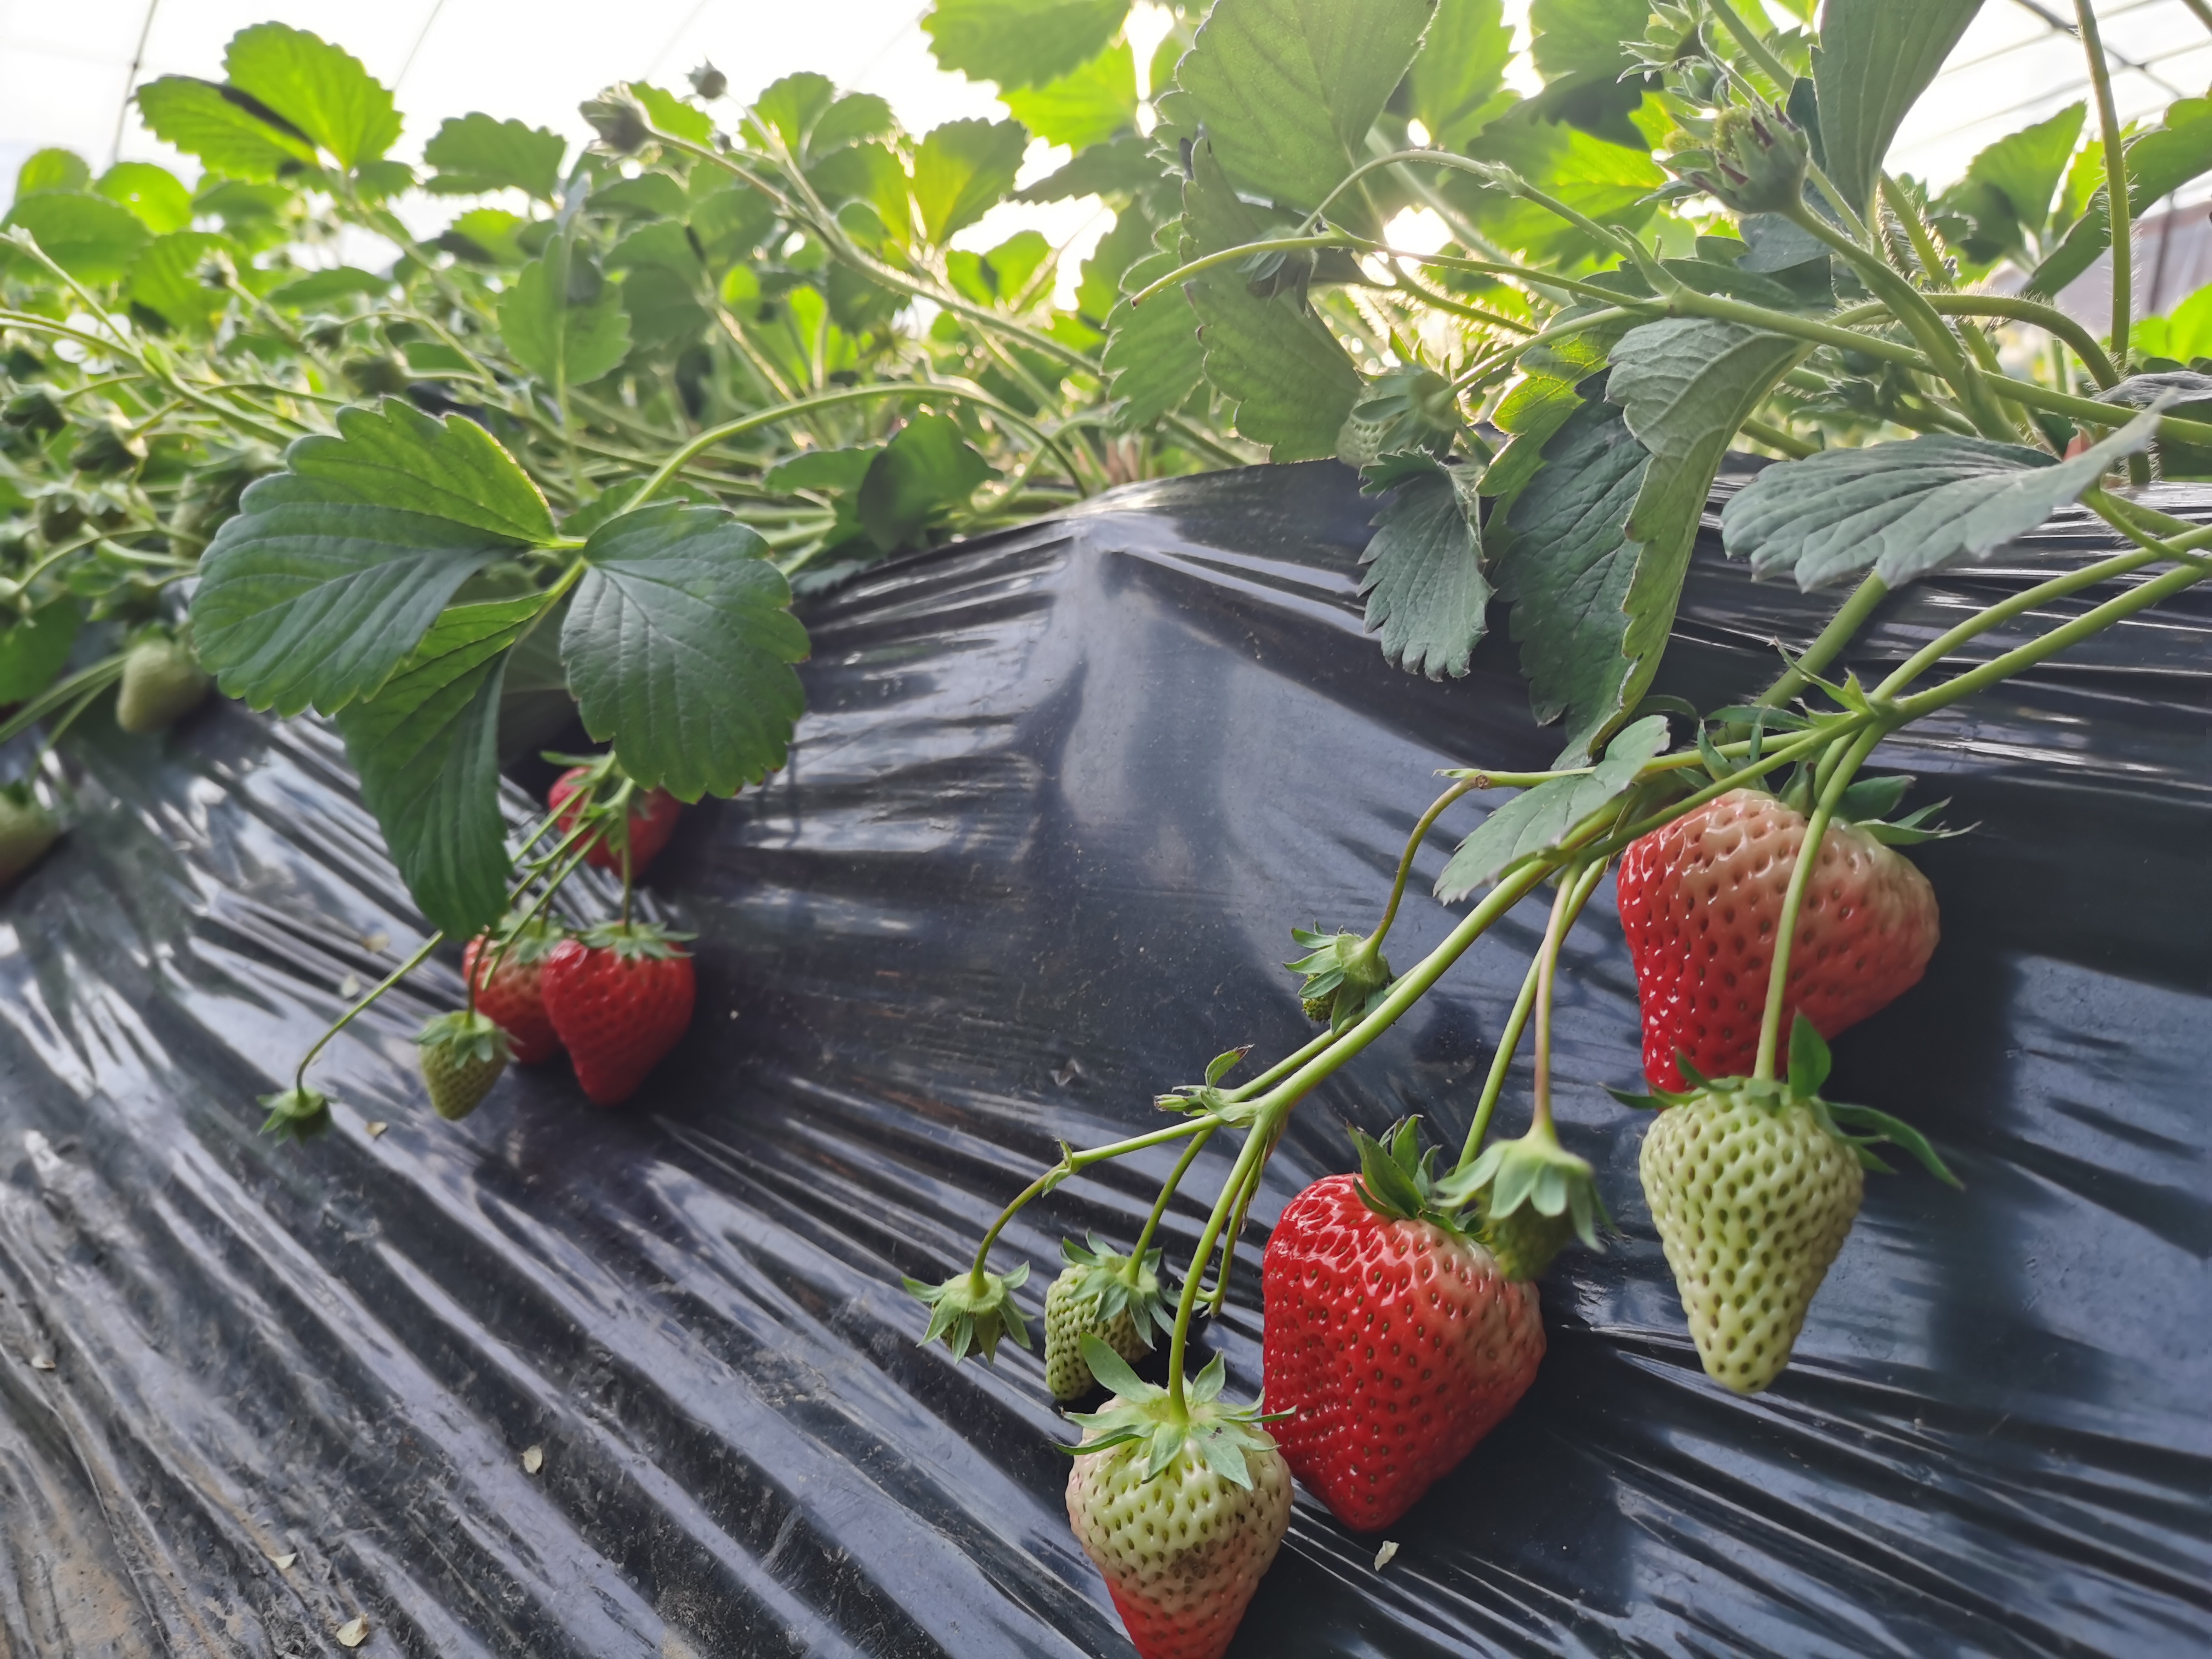 京郊的许多温室大棚里,草莓已经成熟,到了采摘的季节